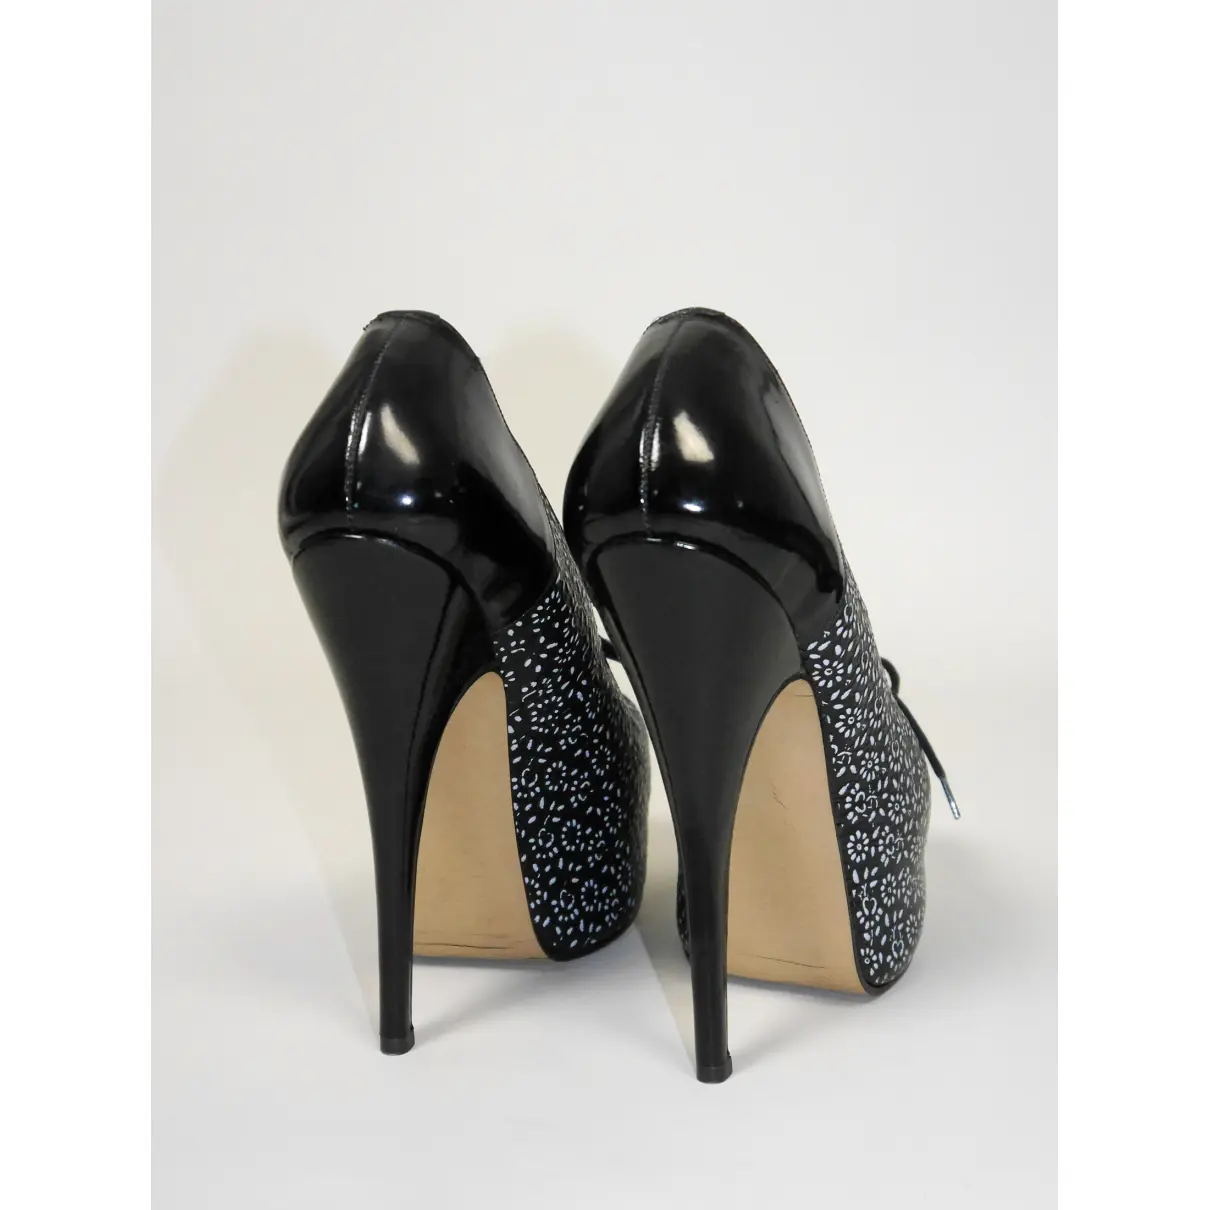 Patent leather heels Vivienne Westwood - Vintage